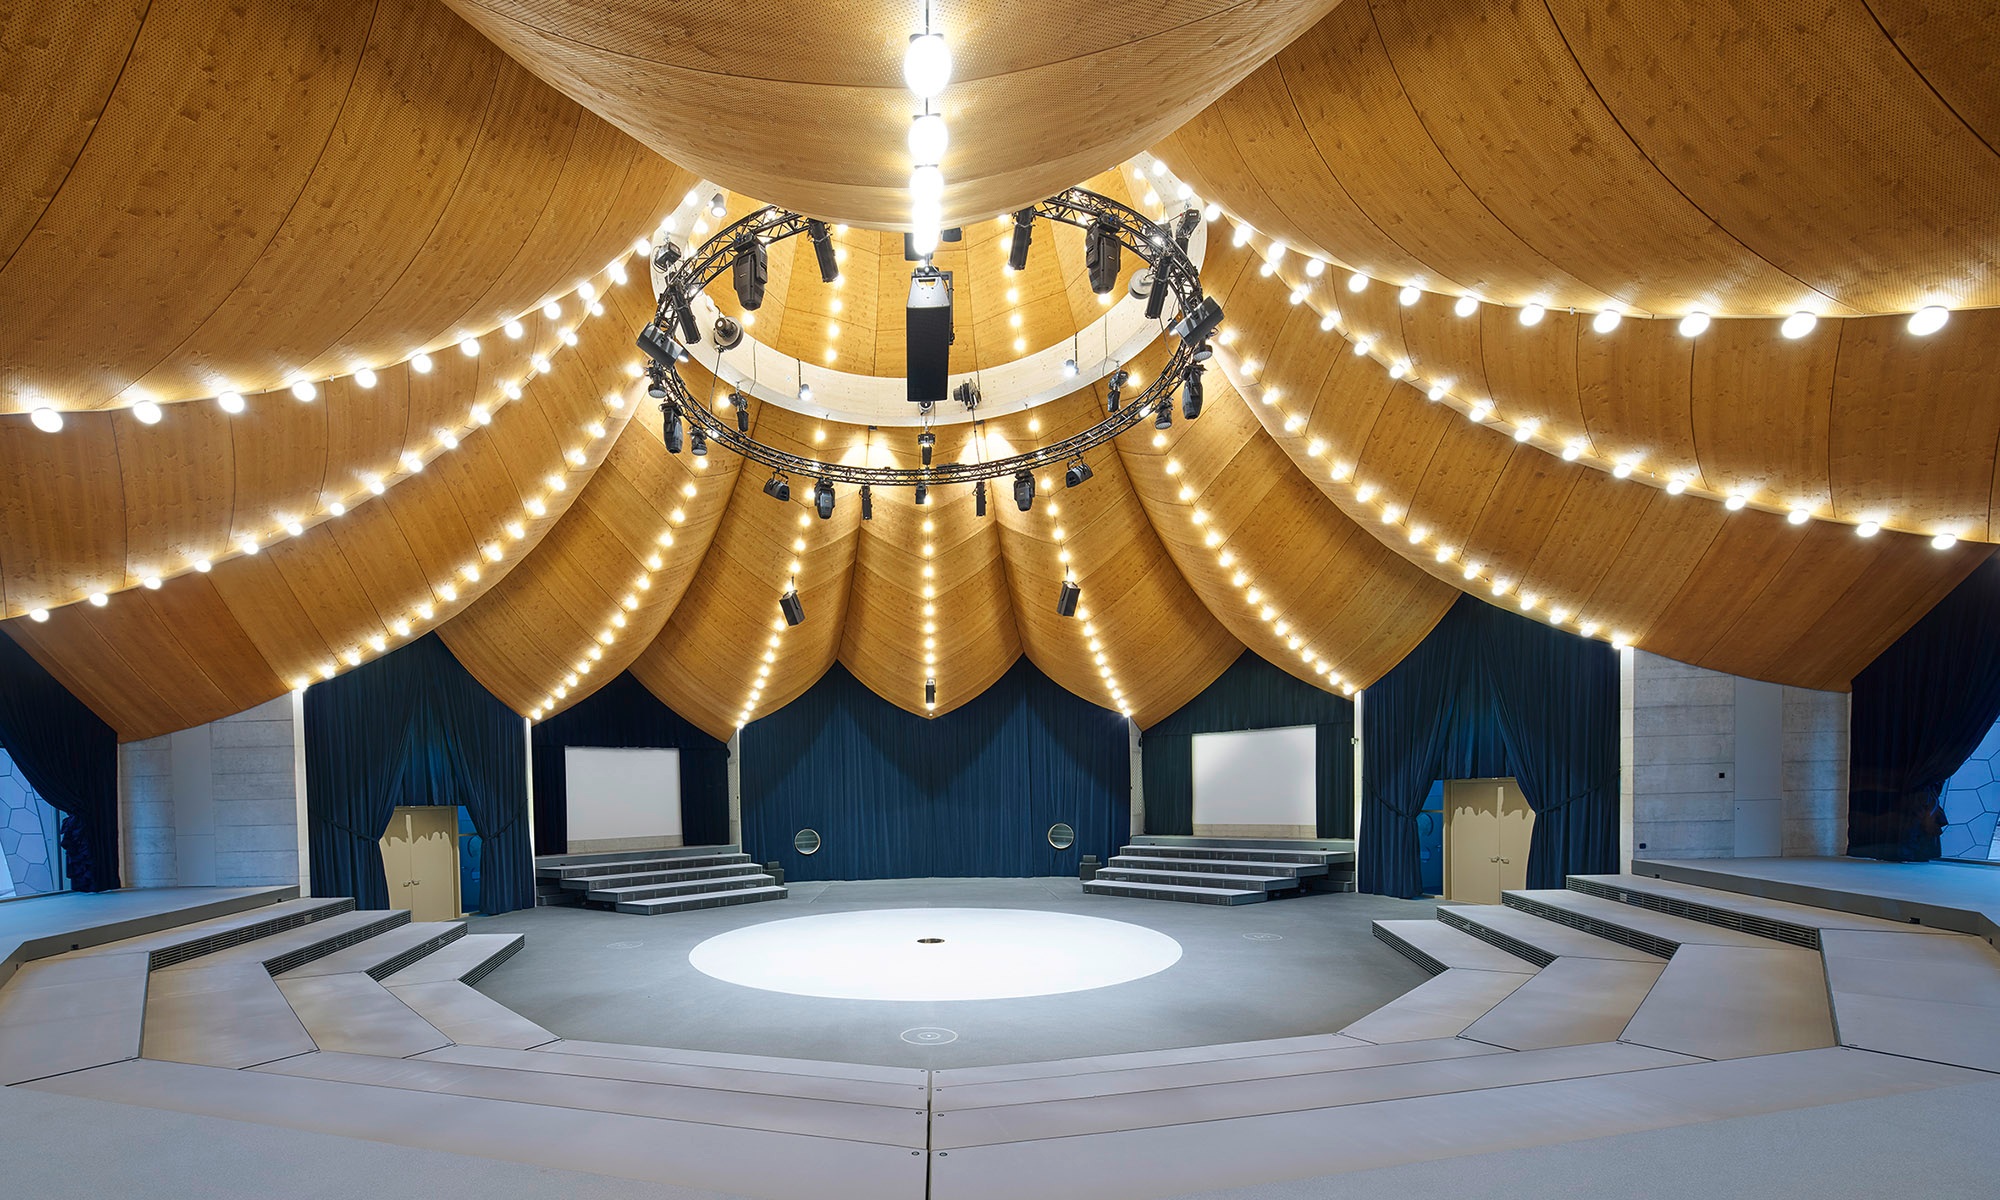 Le toit incurvé en bois crée une atmosphère de cirque à l’intérieur du chapeau de magicien. 